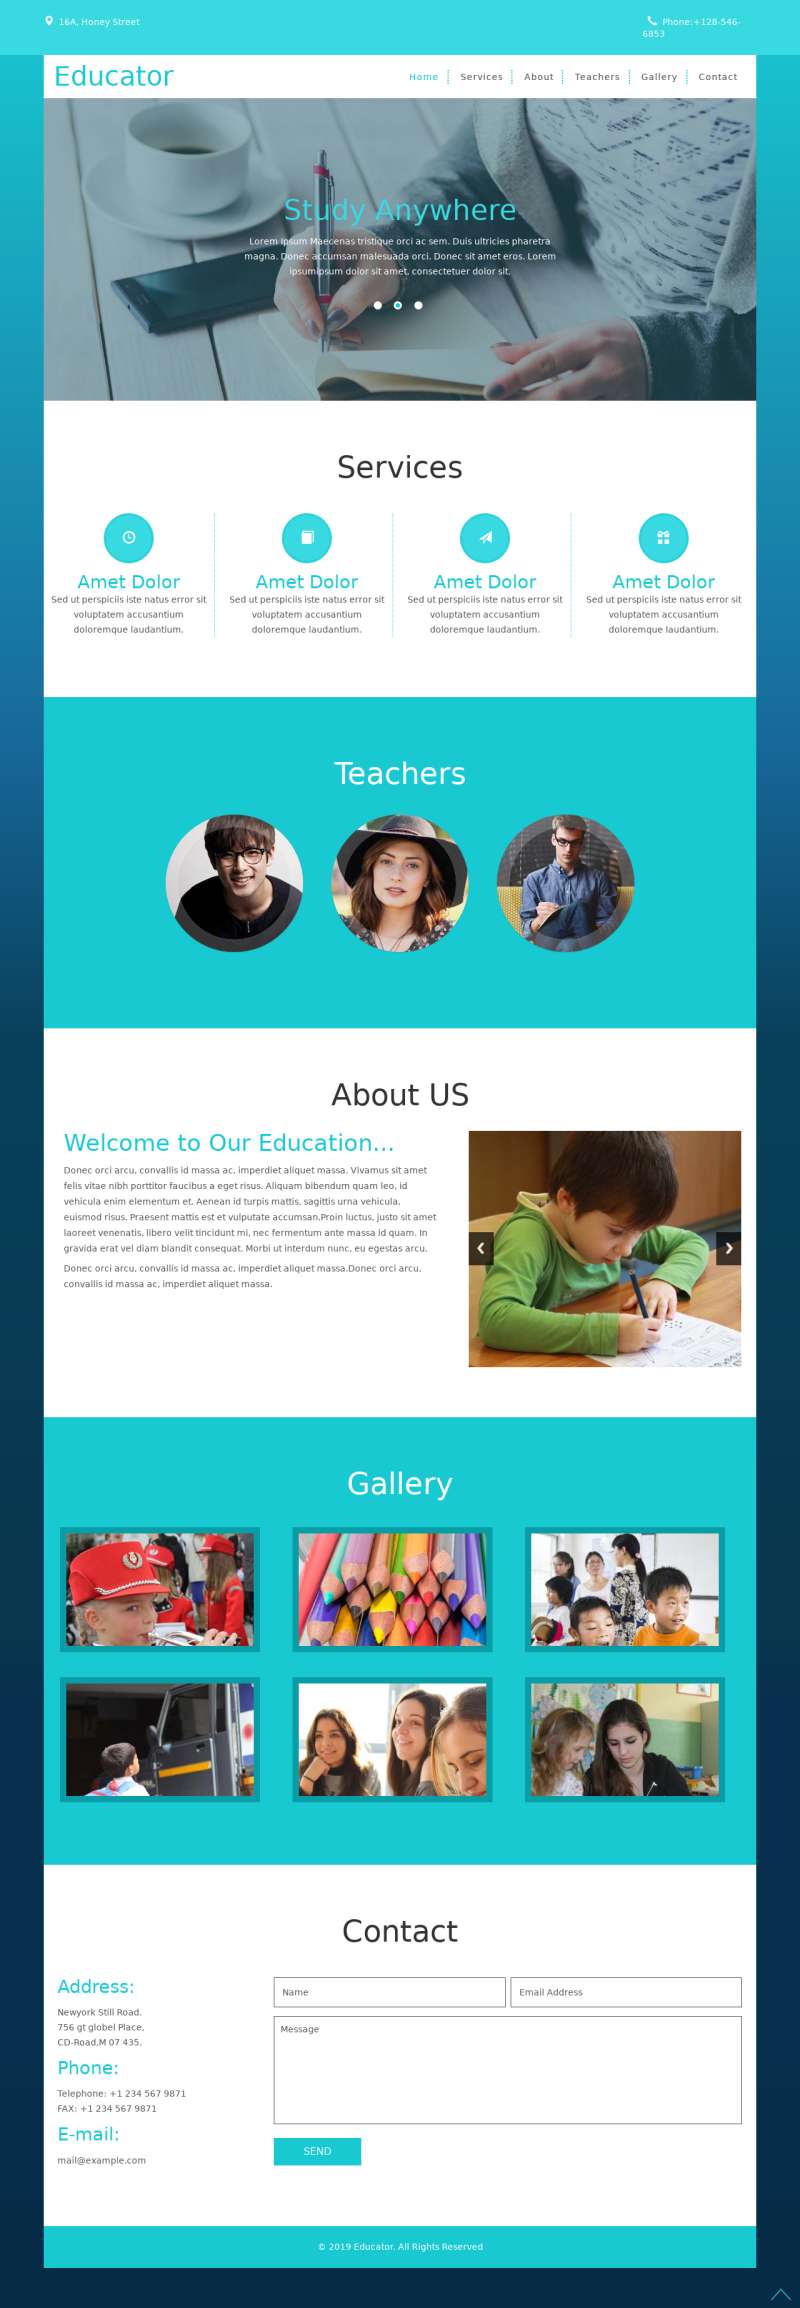 蓝色简易教育机构服务展示单页模板